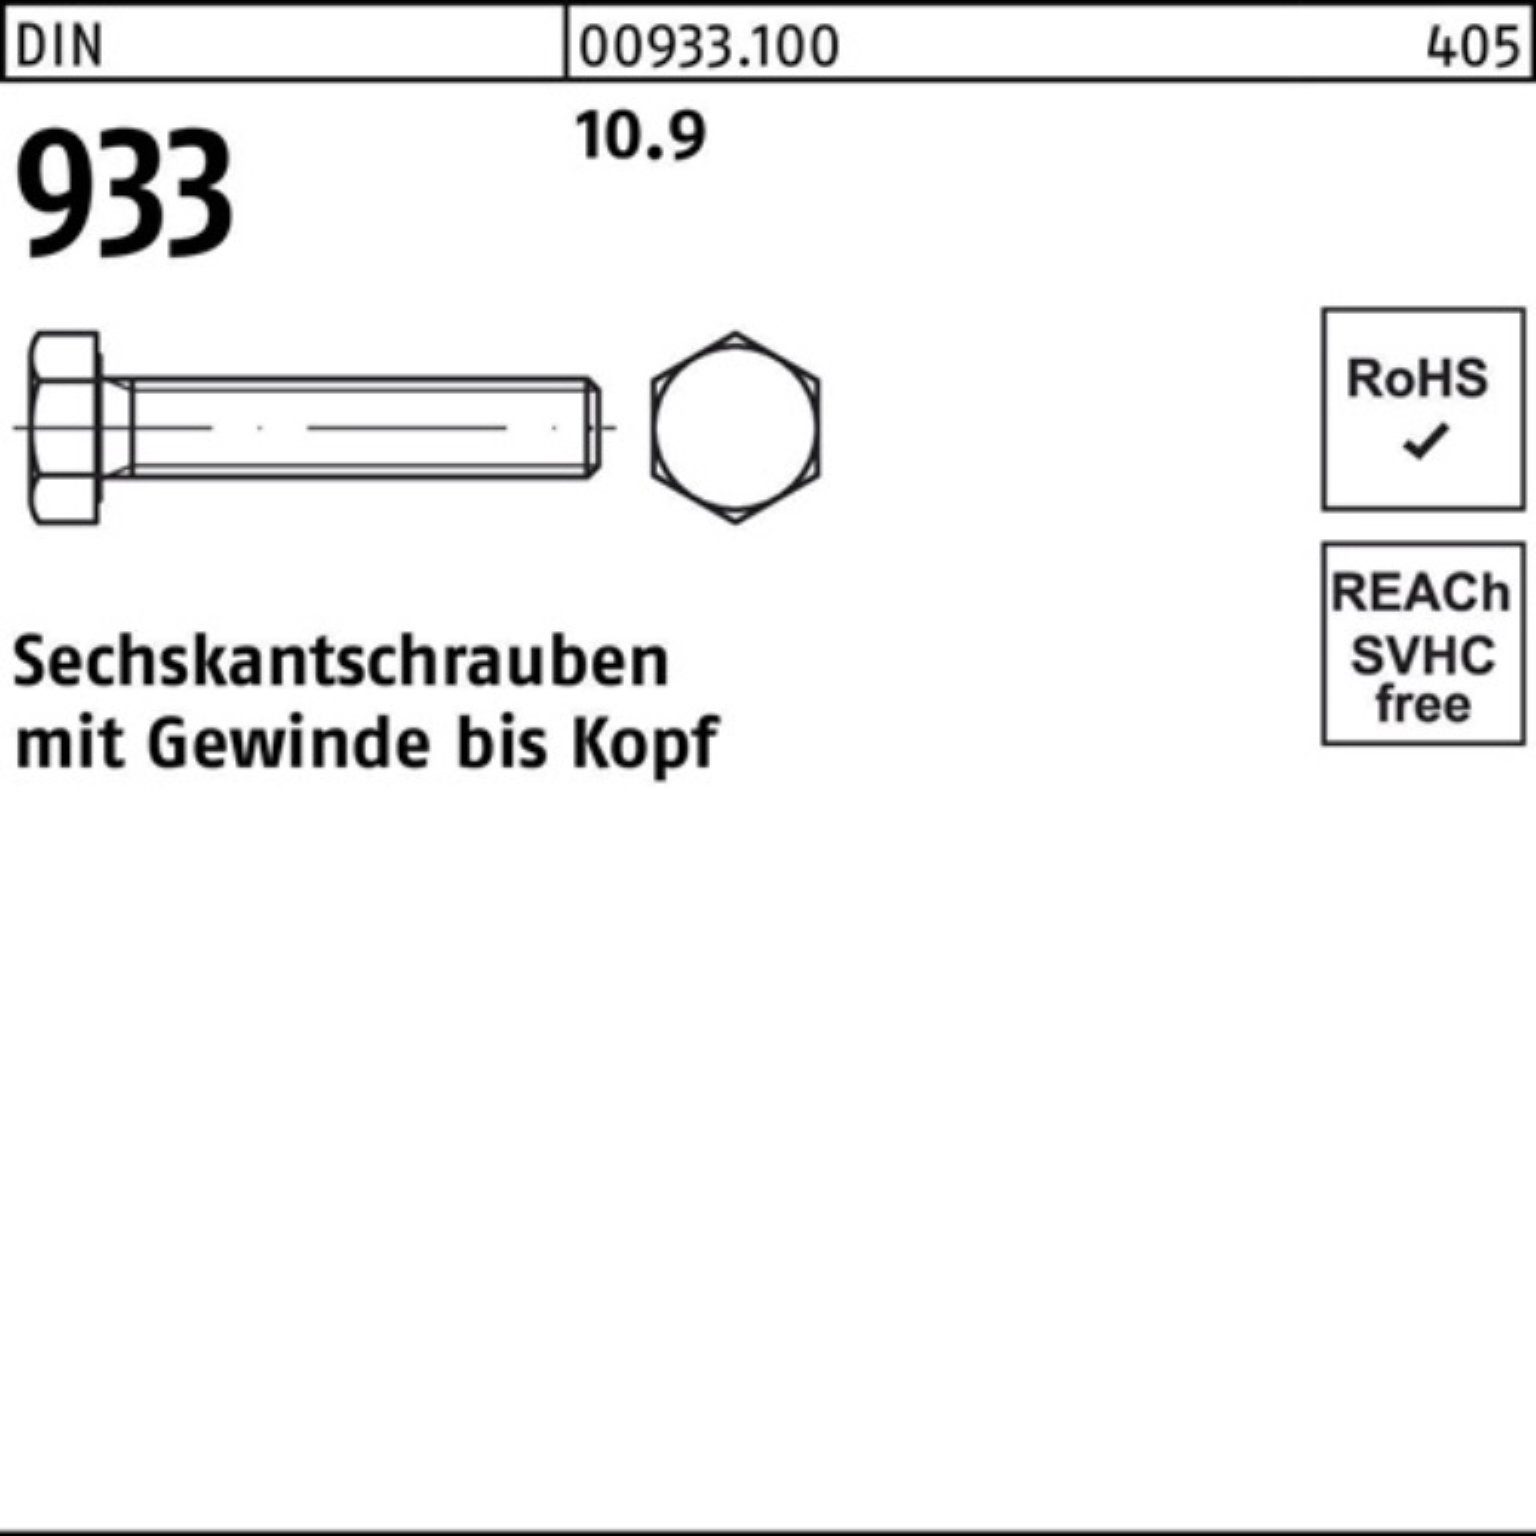 Reyher Sechskantschraube 100er DIN Pack Stück 933 1 VG DIN M27x 10.9 Sechskantschraube 933 180